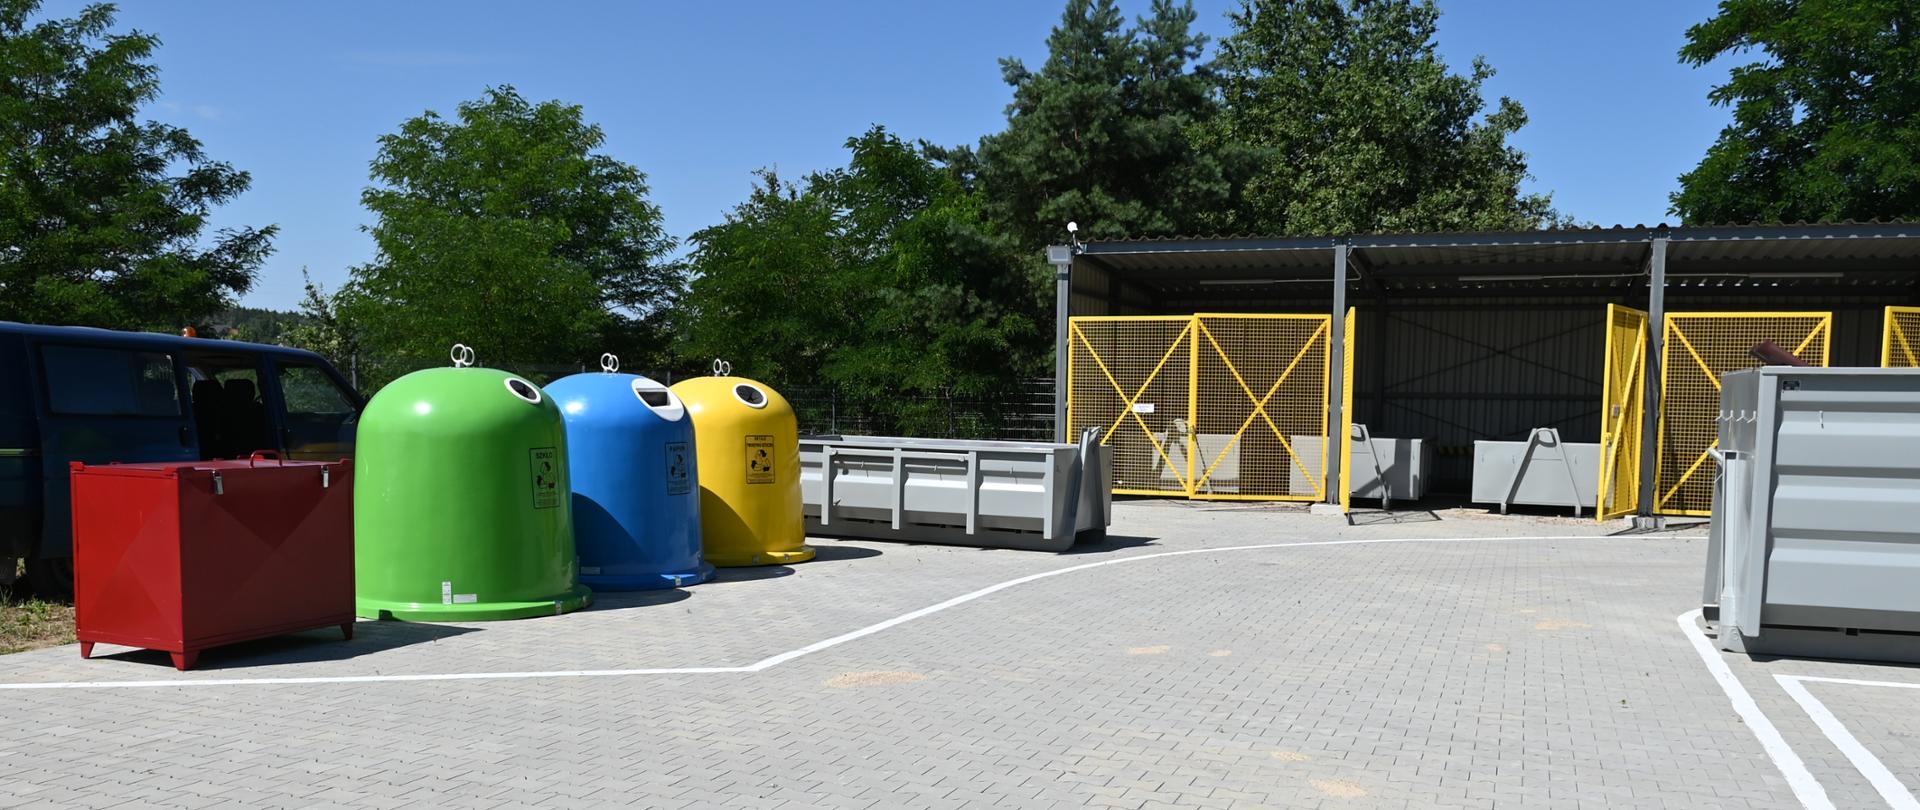 PSZOK - kolorowe kontenery przeznaczone do selektywnej zbiórki odpadów